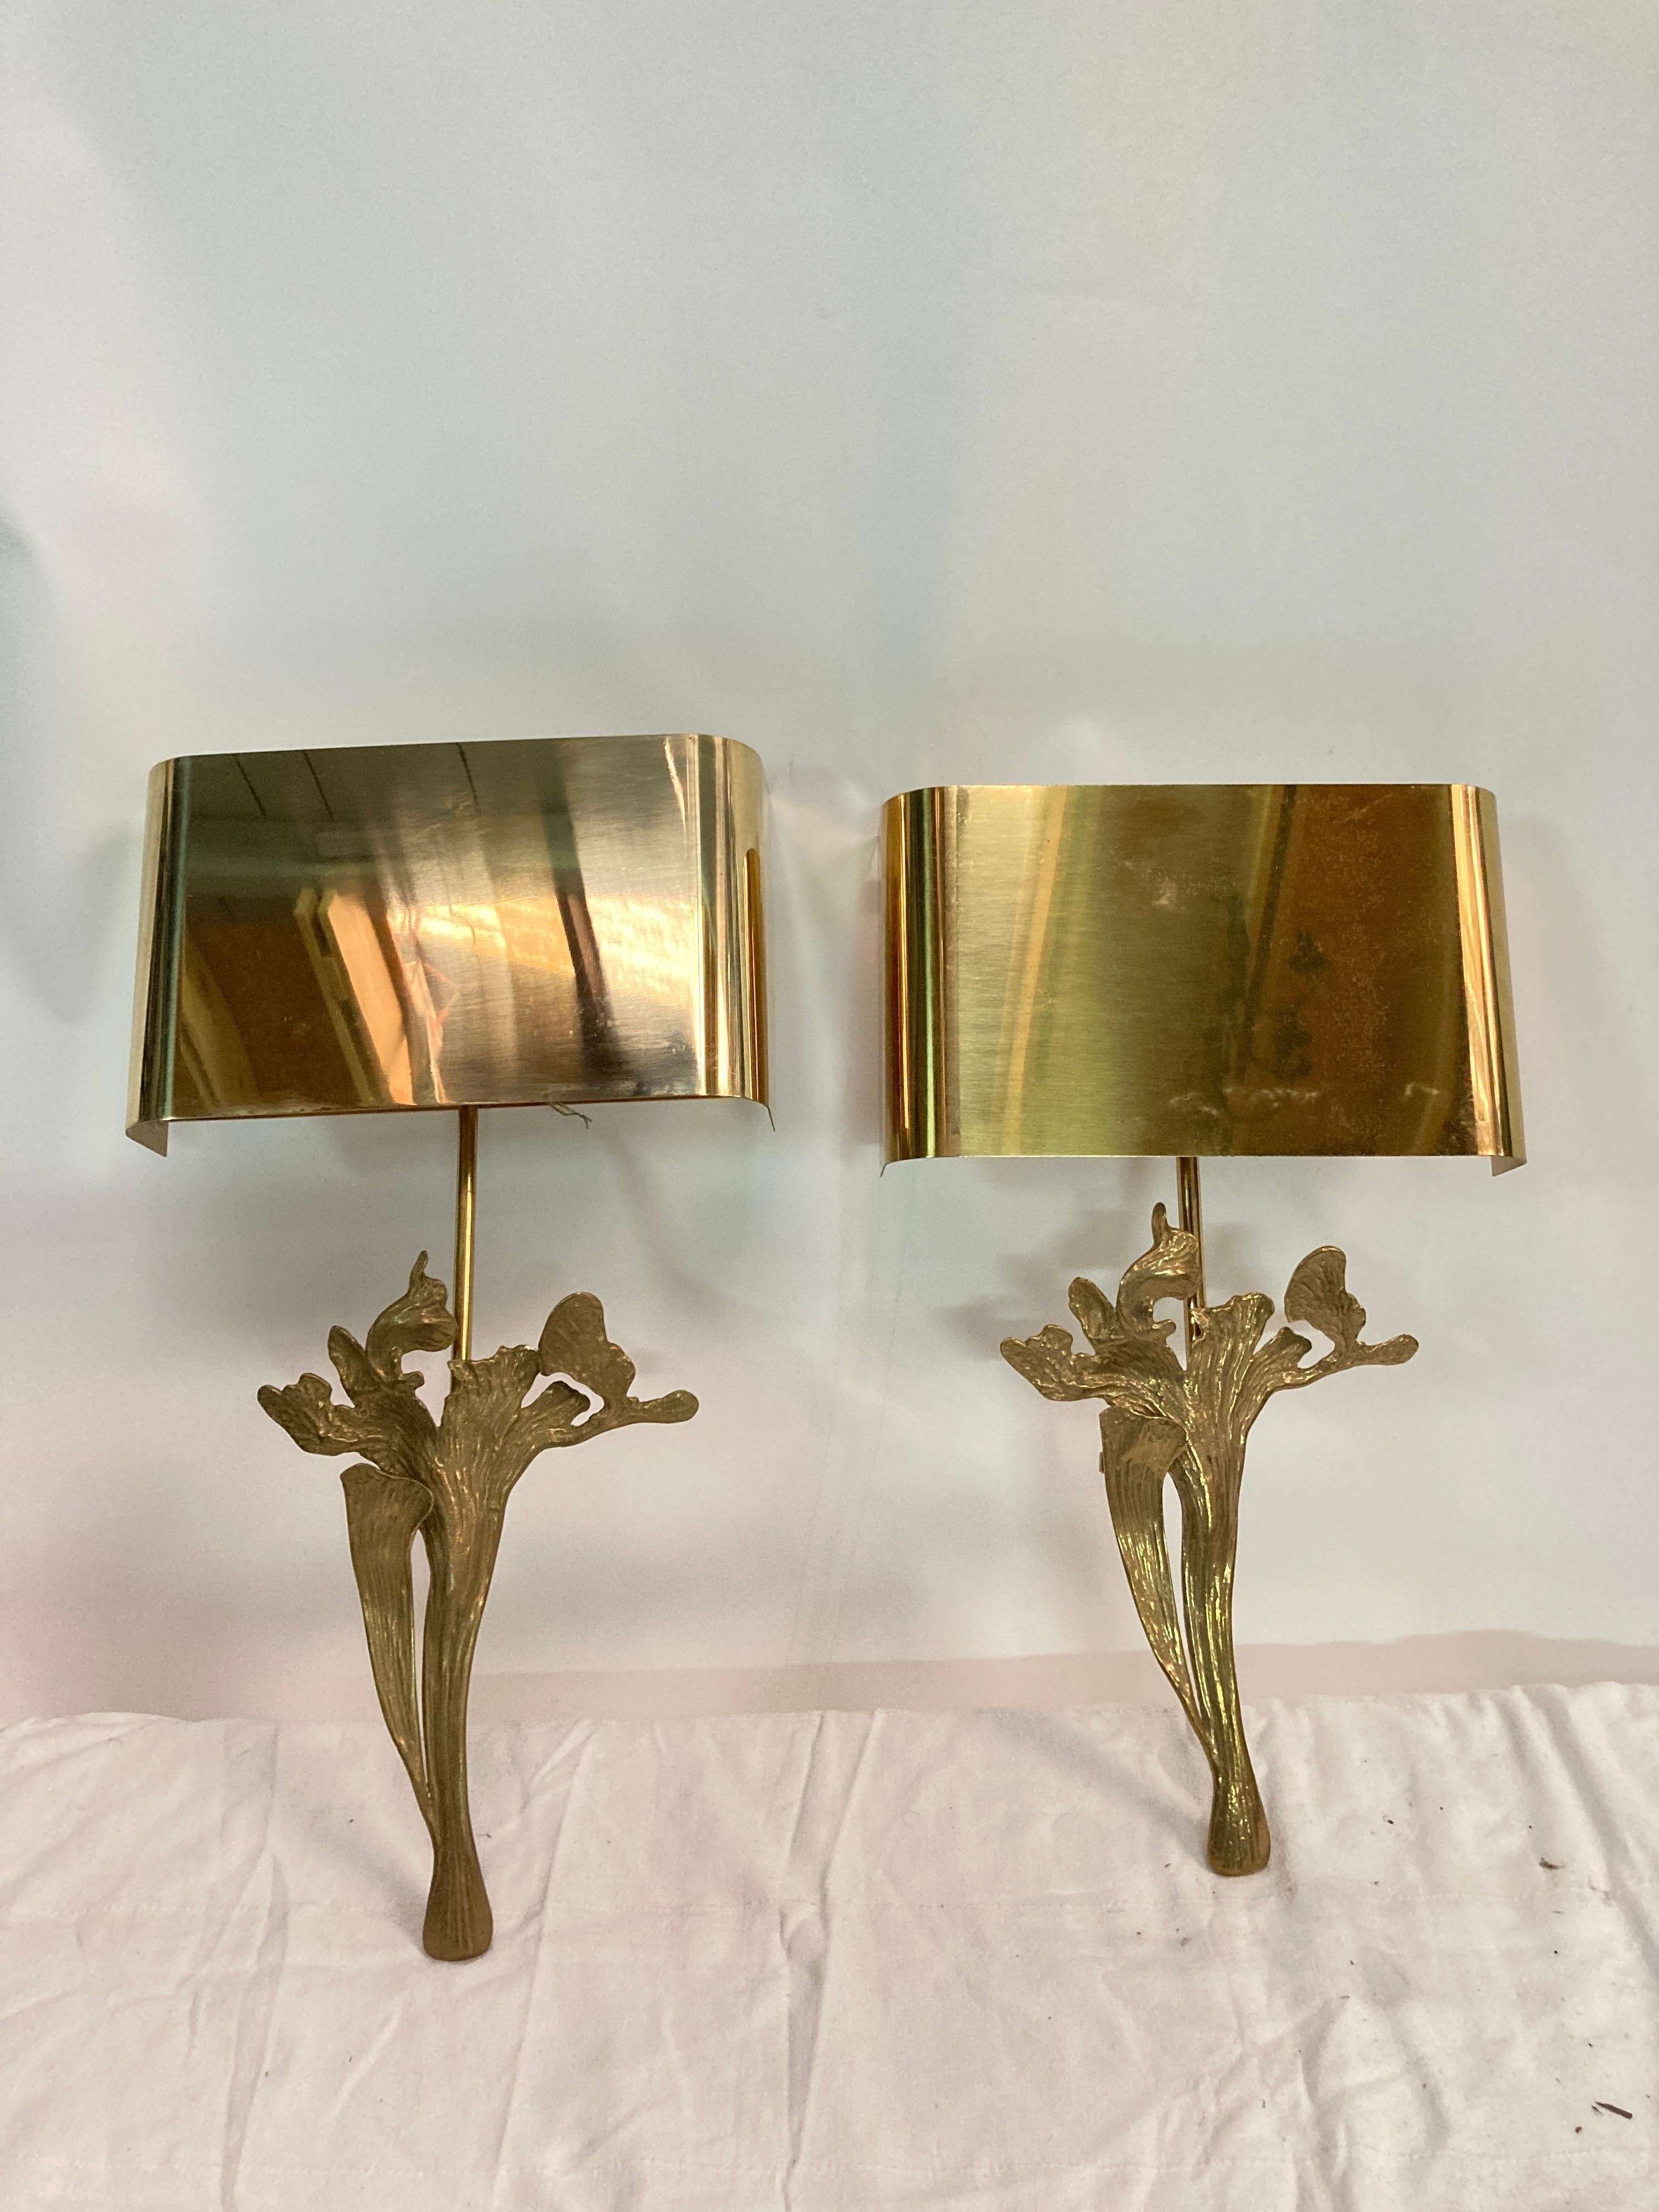 Schönes Paar Bronzewandleuchten mit poliertem Messingschirm
Unterzeichnet von Maison Charles
Hergestellt in Frankreich
Zwei Paare verfügbar 
Neu verkabelt